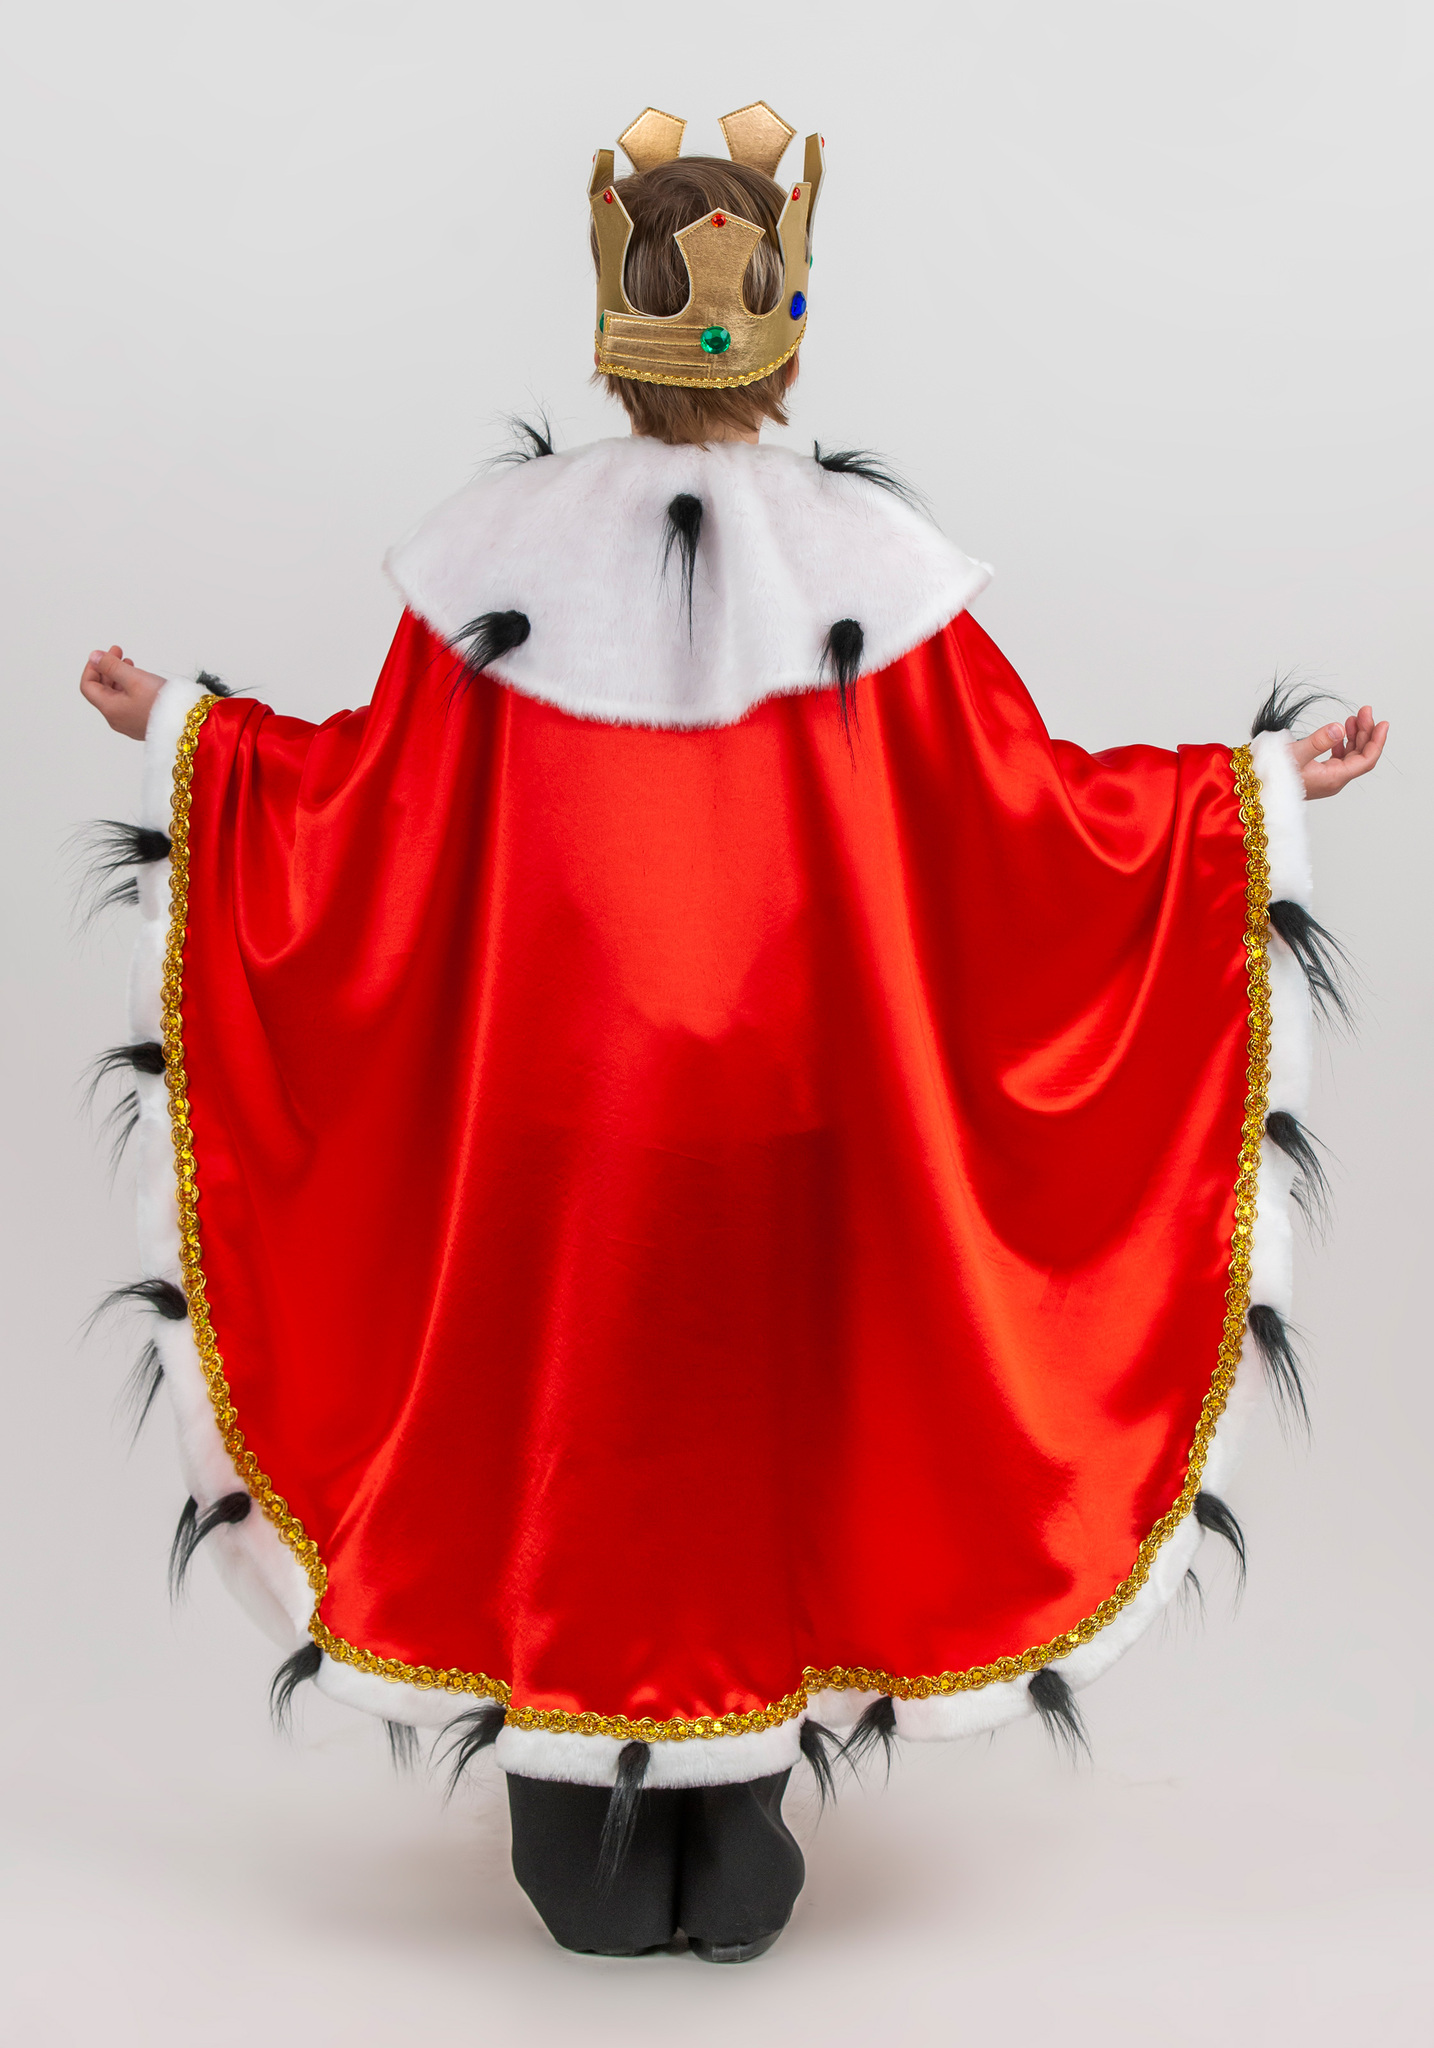 Новогодний костюм короля, принца для мальчика в Чите